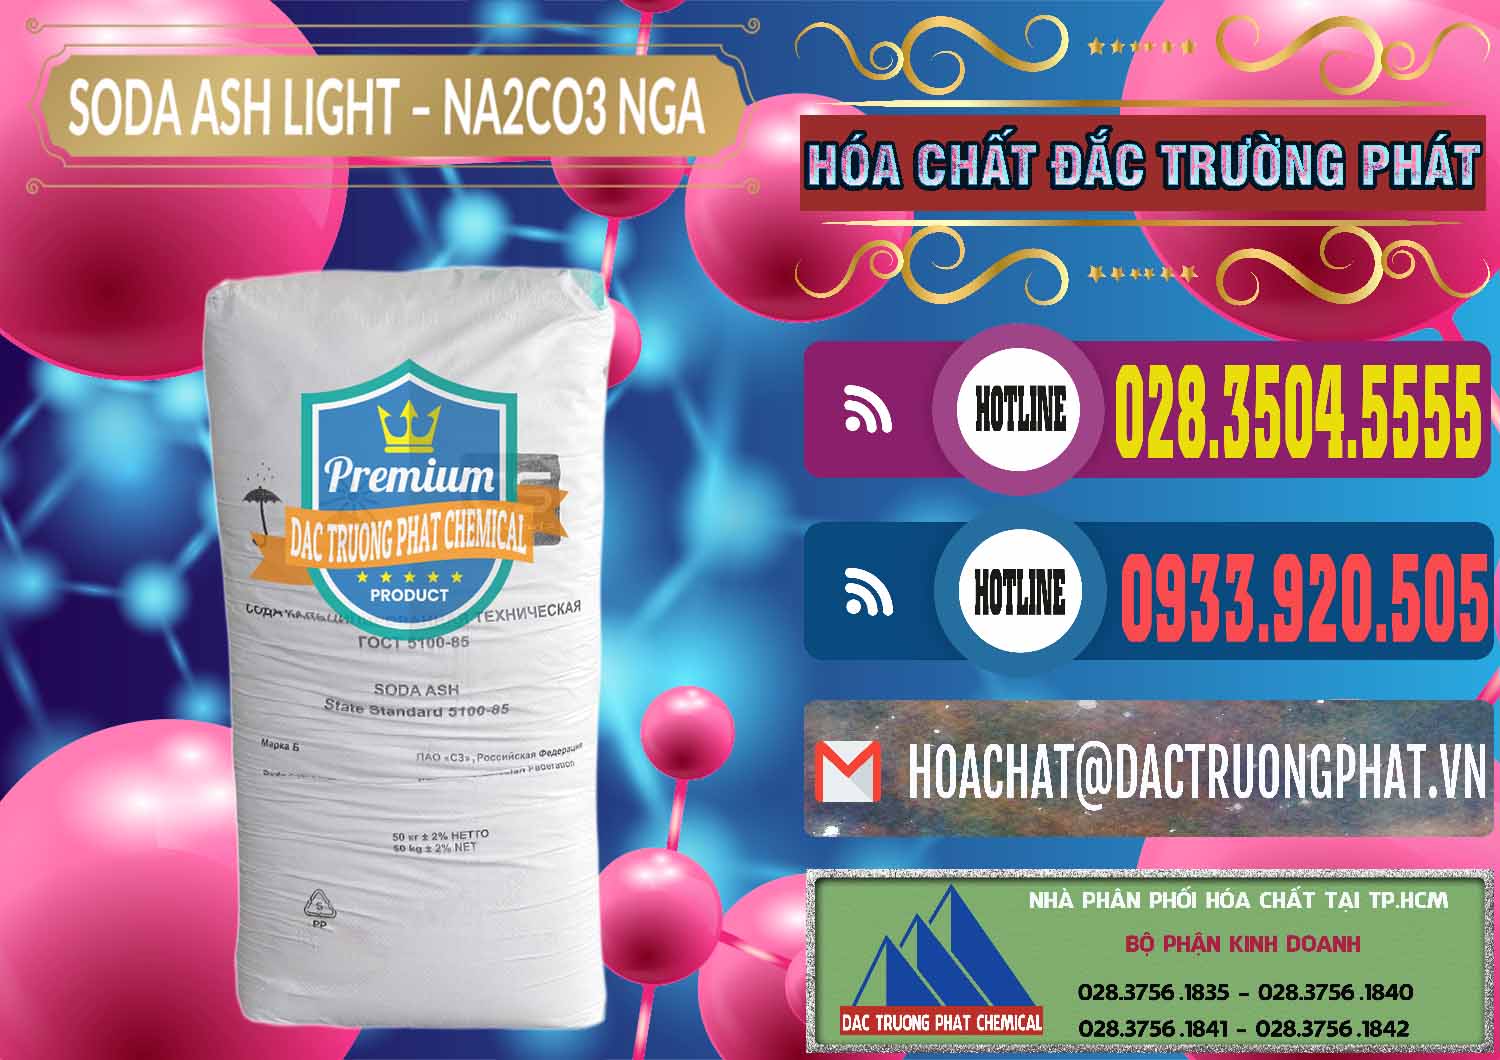 Chuyên bán & phân phối Soda Ash Light - NA2CO3 Nga Russia - 0128 - Cty chuyên cung cấp & bán hóa chất tại TP.HCM - muabanhoachat.com.vn